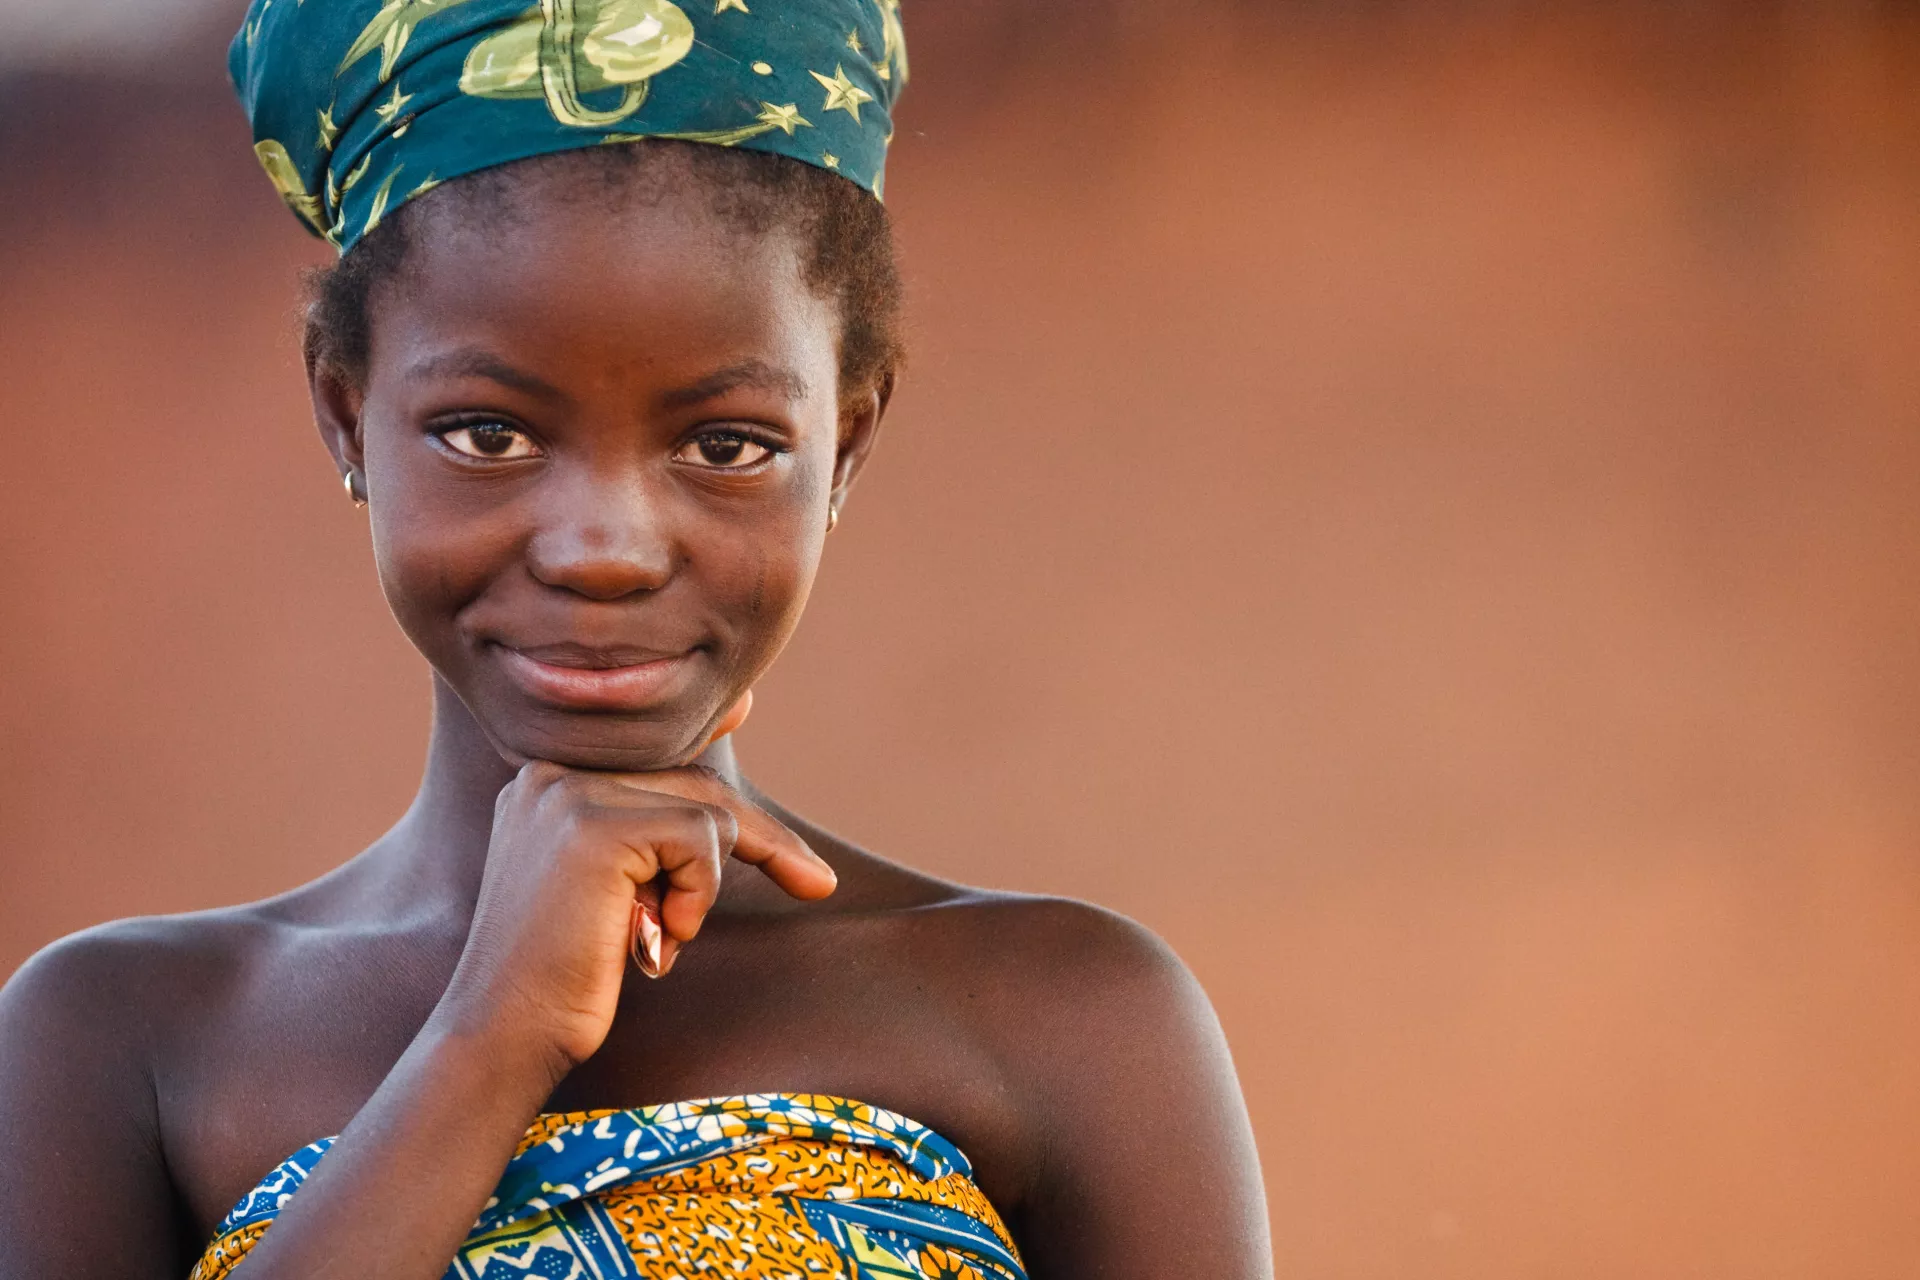 Girl in the village of Yezegu, Ghana on Friday November 12, 2010.